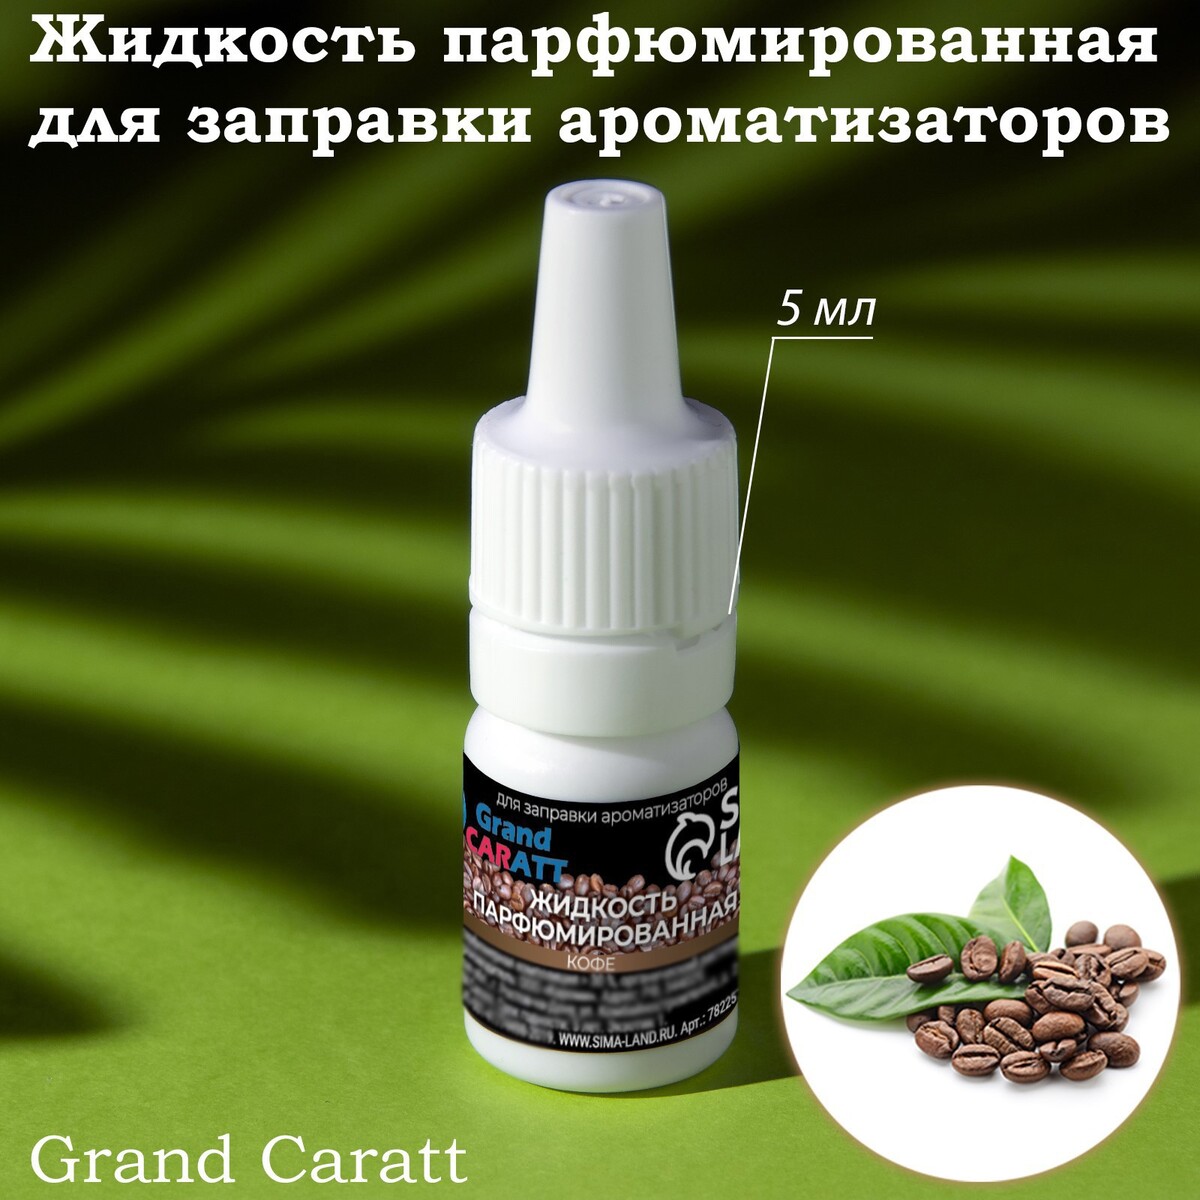 Жидкость парфюмированная grand caratt, для заправки ароматизаторов, кофе, 5 мл жидкость парфюмированная grand caratt для заправки ароматизаторов кофе 5 мл